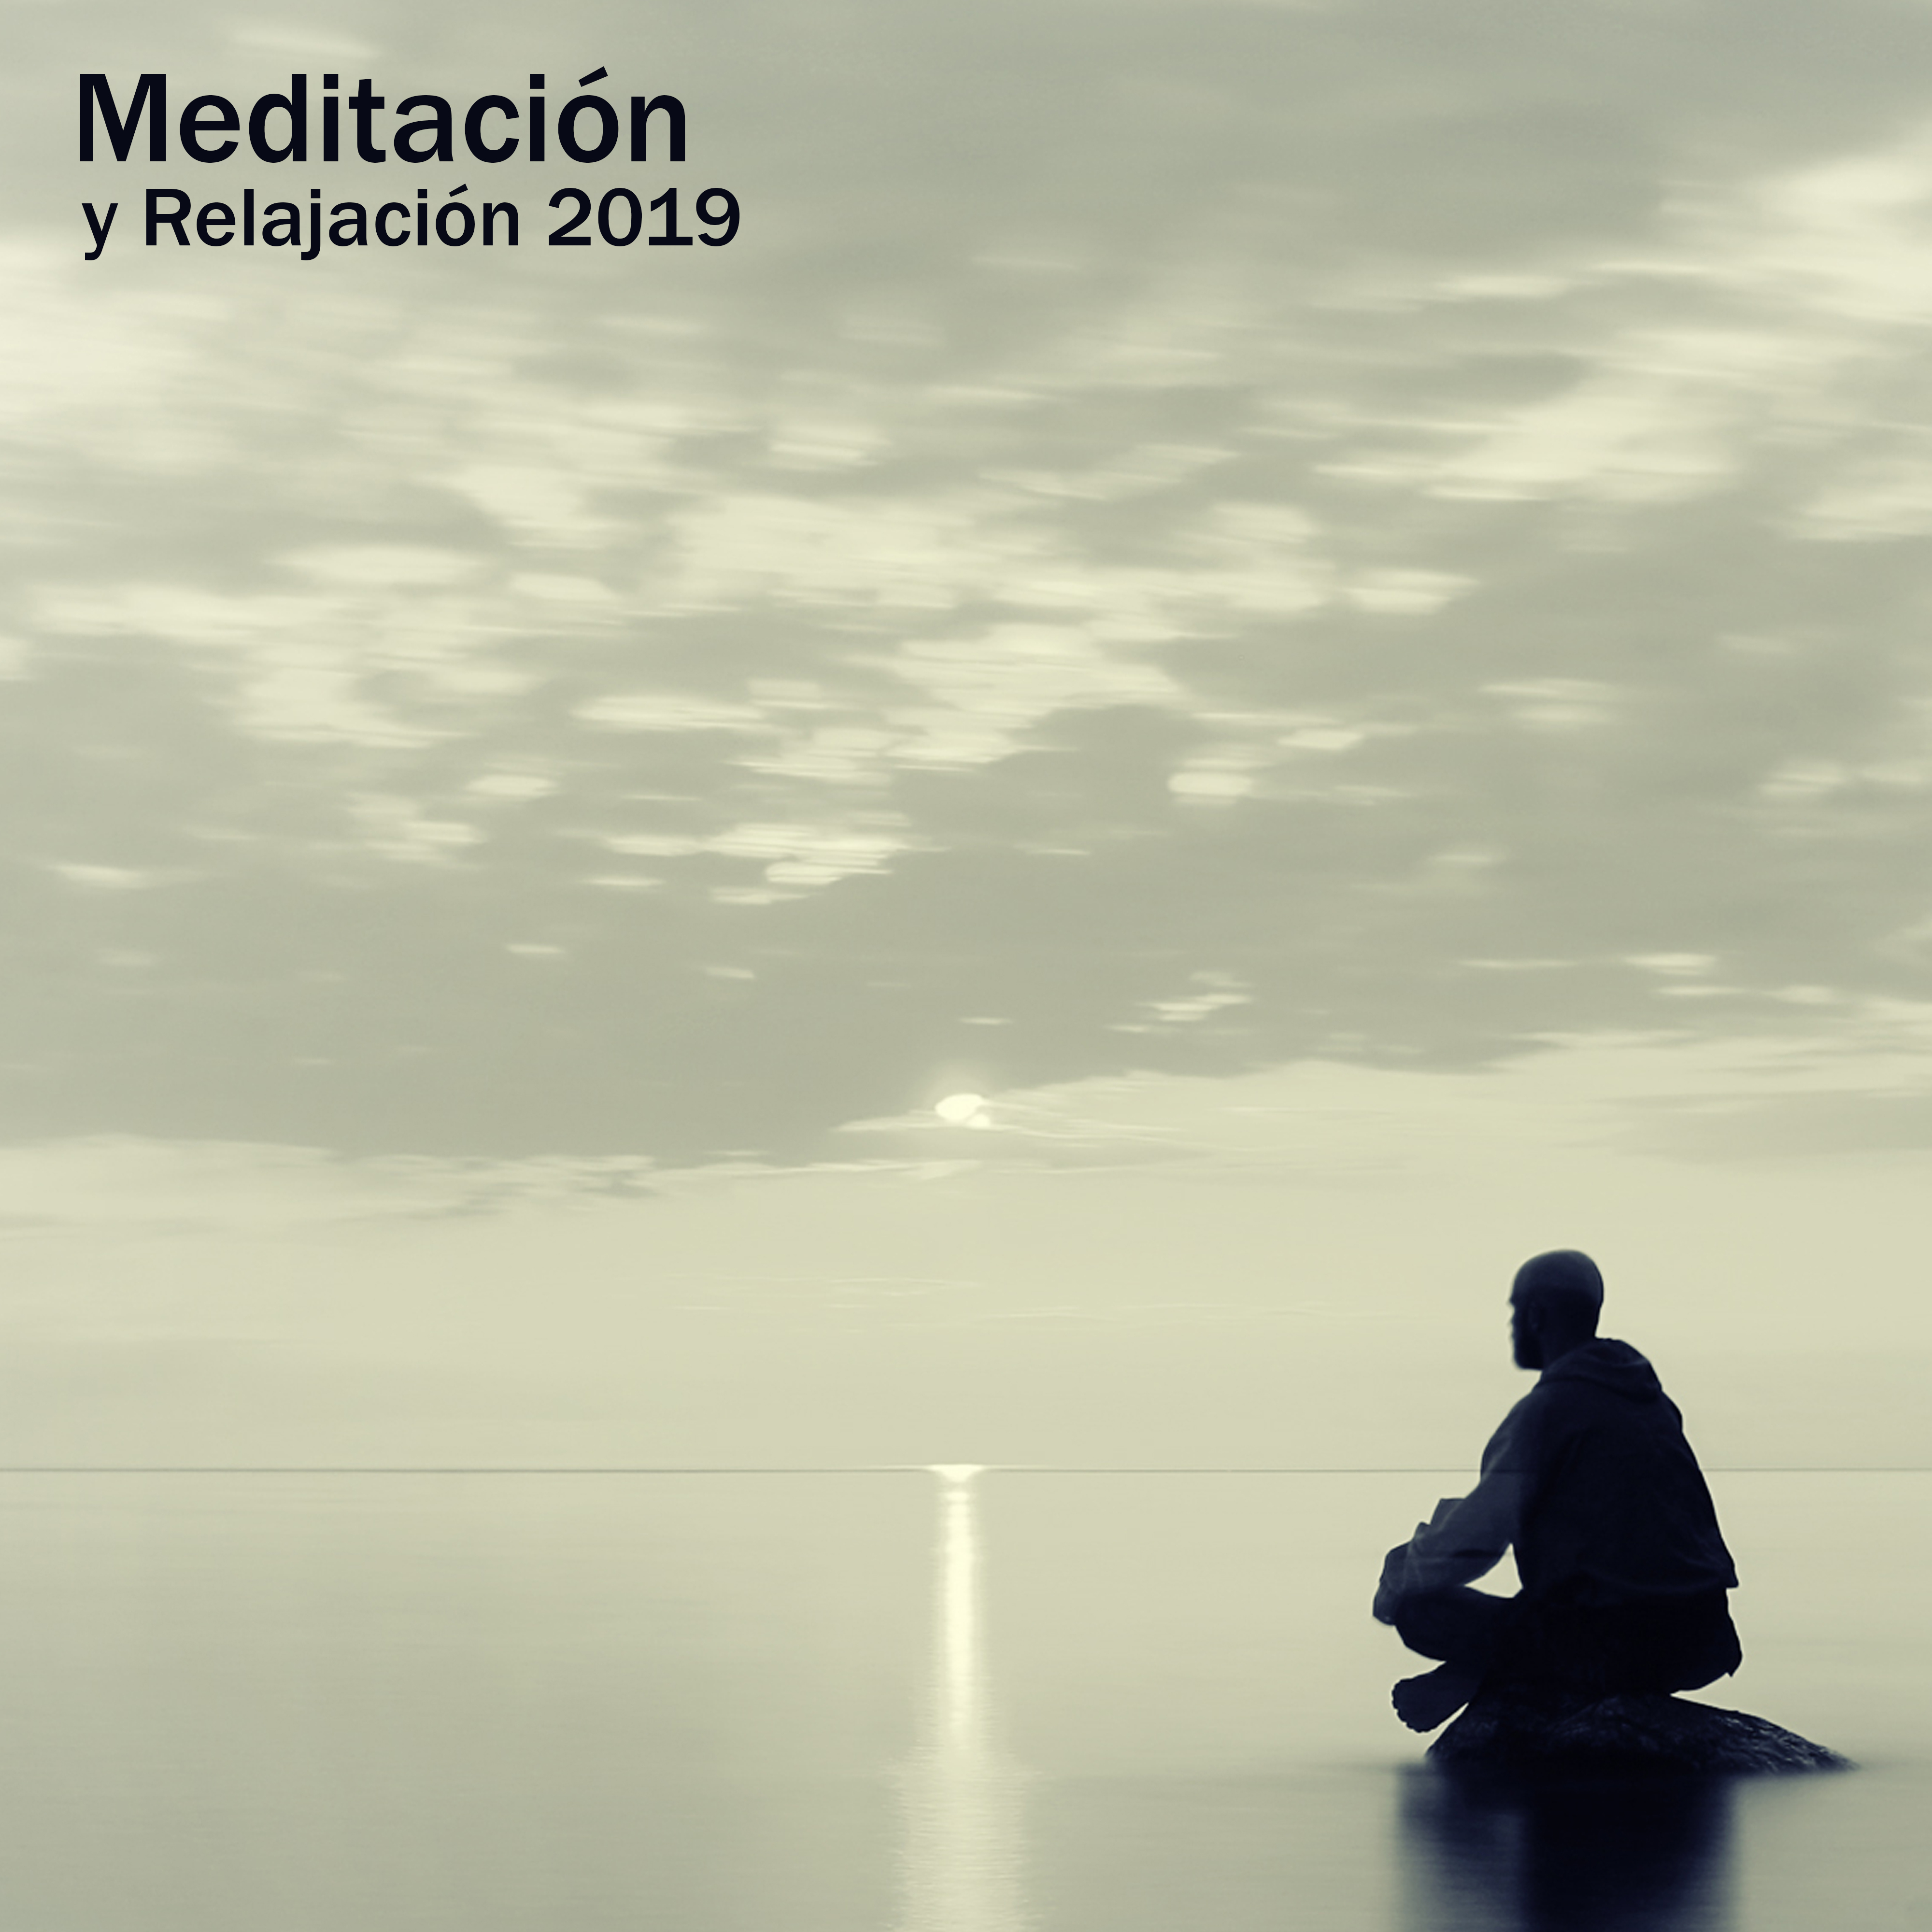 Meditacio n y Relajacio n 2019  Relajacio n Asia tica, Meditacio n Profunda, Mu sica para la Relajacio n, Armoni a, Mu sica Antiestre s